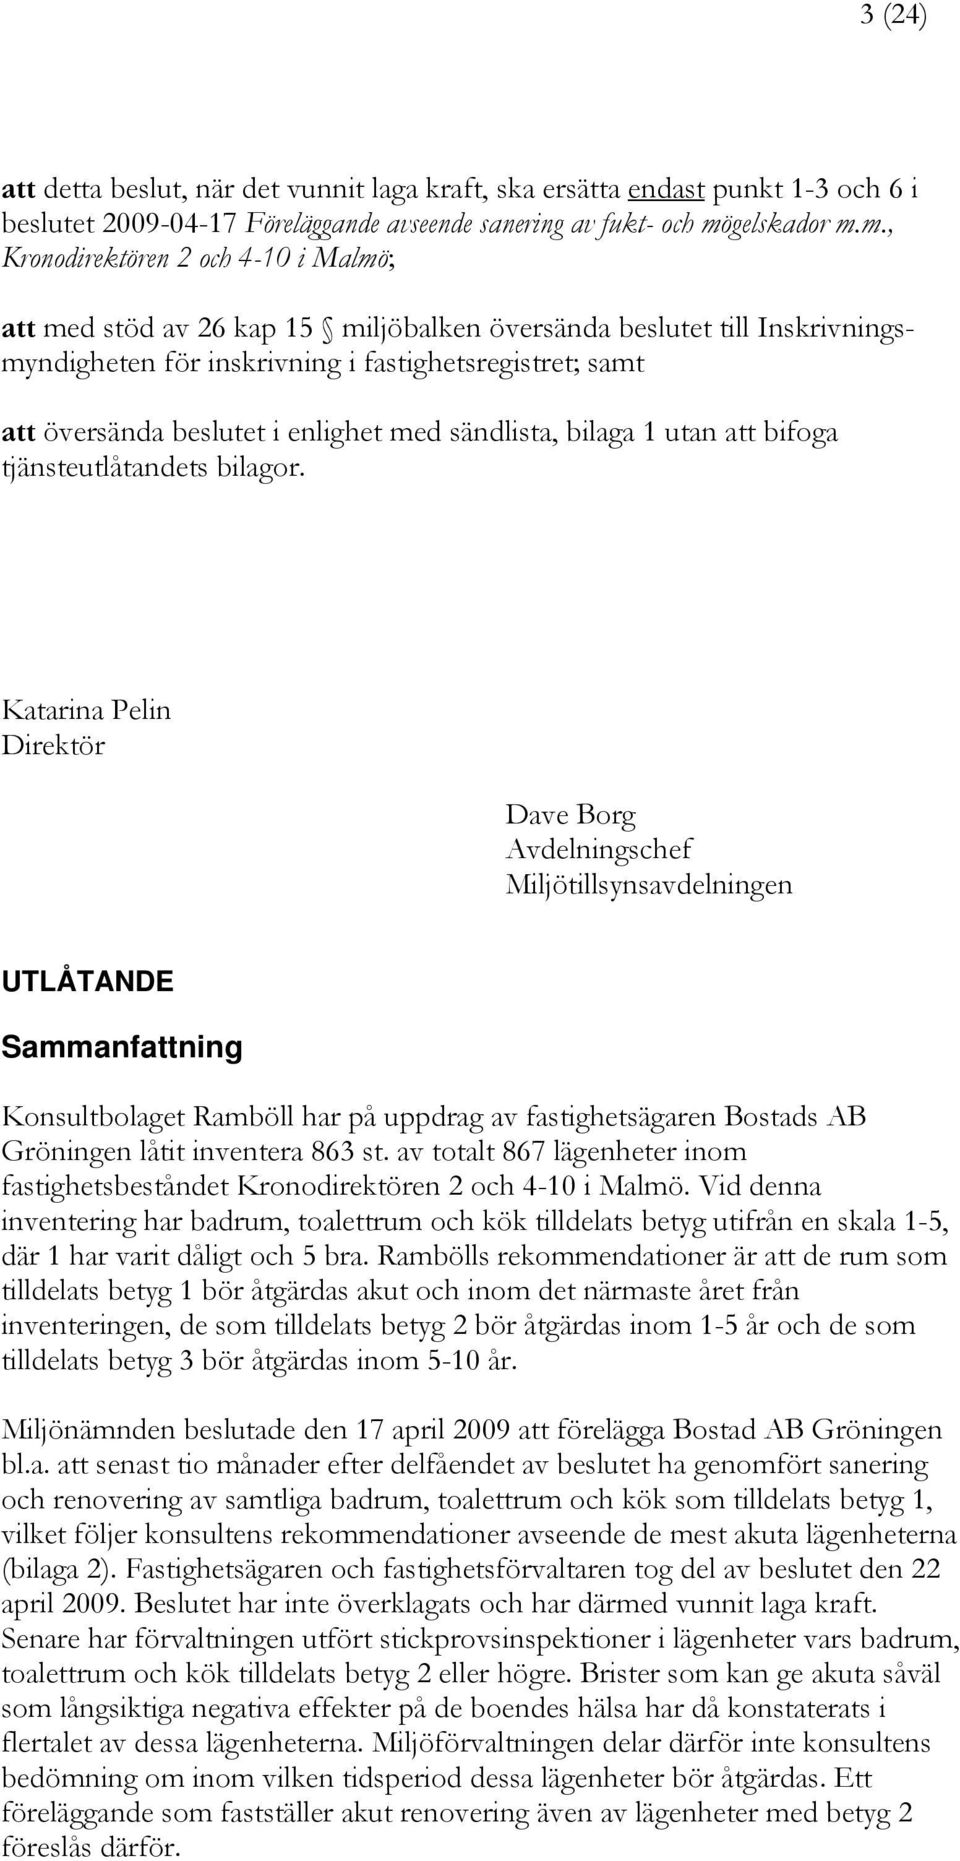 m., Kronodirektören 2 och 4-10 i Malmö; att med stöd av 26 kap 15 miljöbalken översända beslutet till Inskrivningsmyndigheten för inskrivning i fastighetsregistret; samt att översända beslutet i